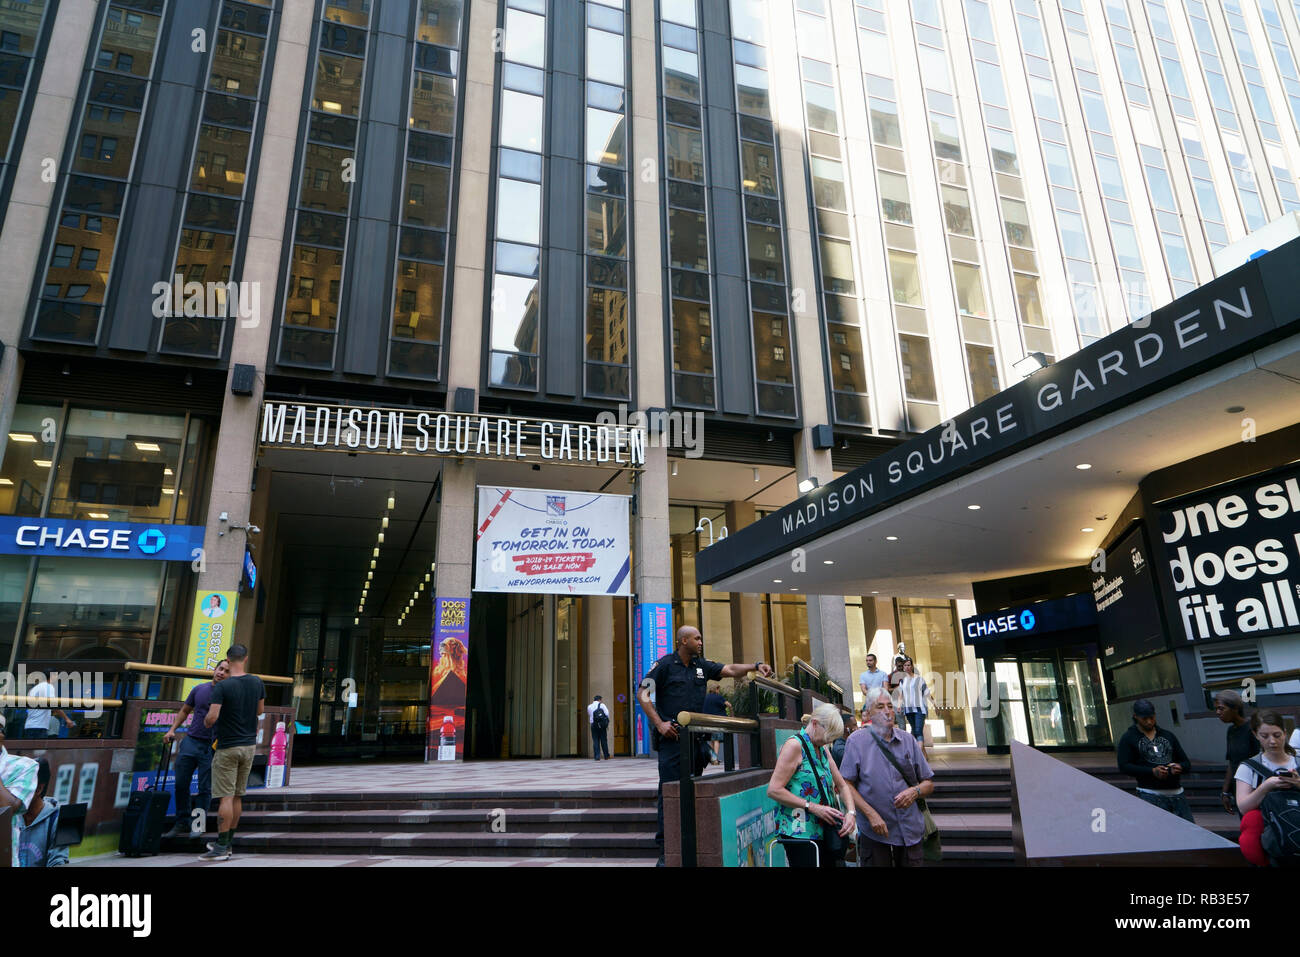 Vue extérieure de Madison Square Garden sur la 7ème Avenue.Manhattan.New York City.USA Banque D'Images